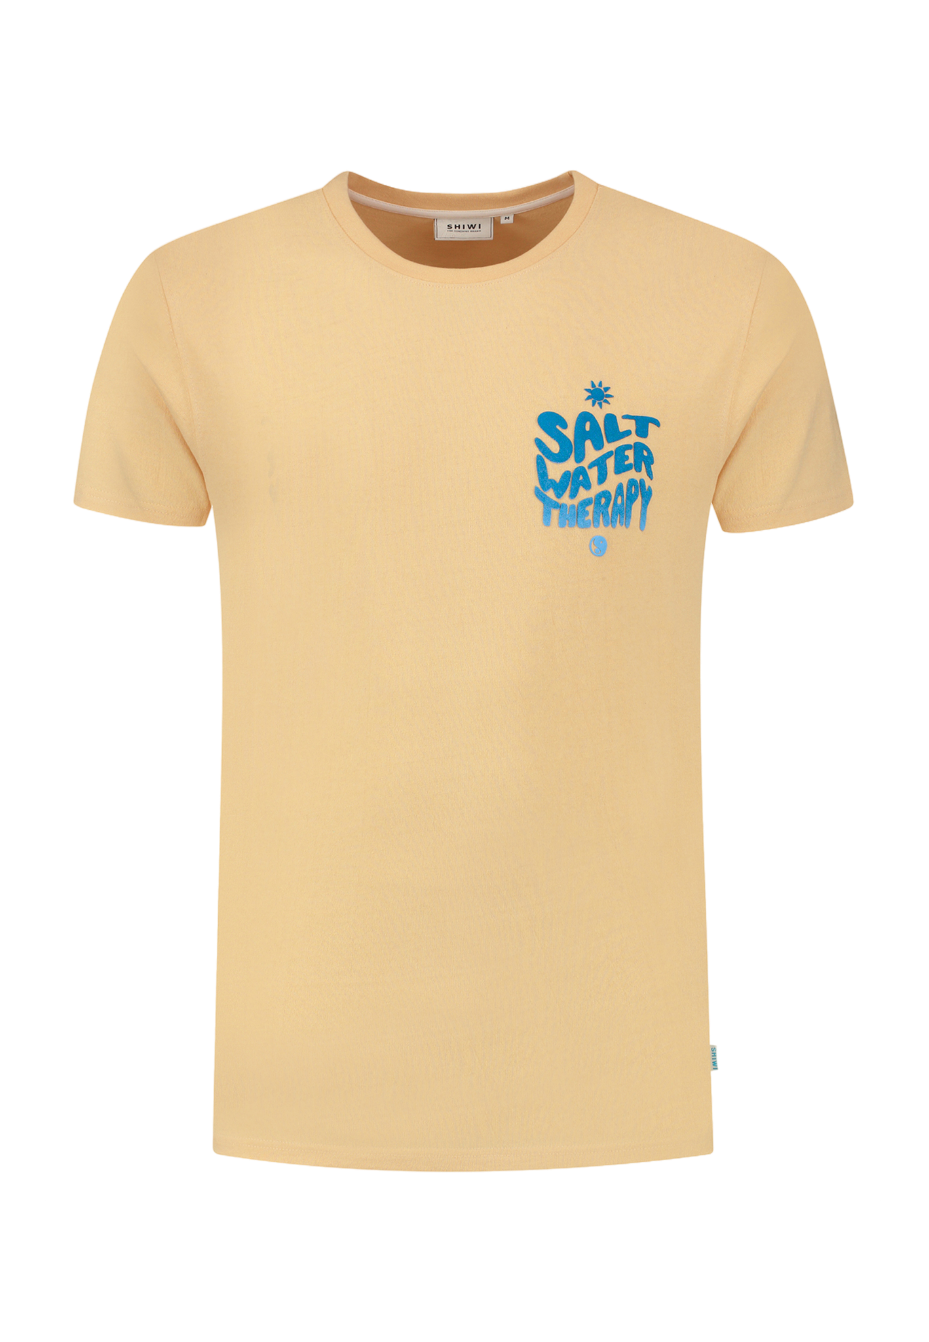 Shiwi - T-Shirt Salt Water Cayman Peach - Heren - Maat M - Regular-fit